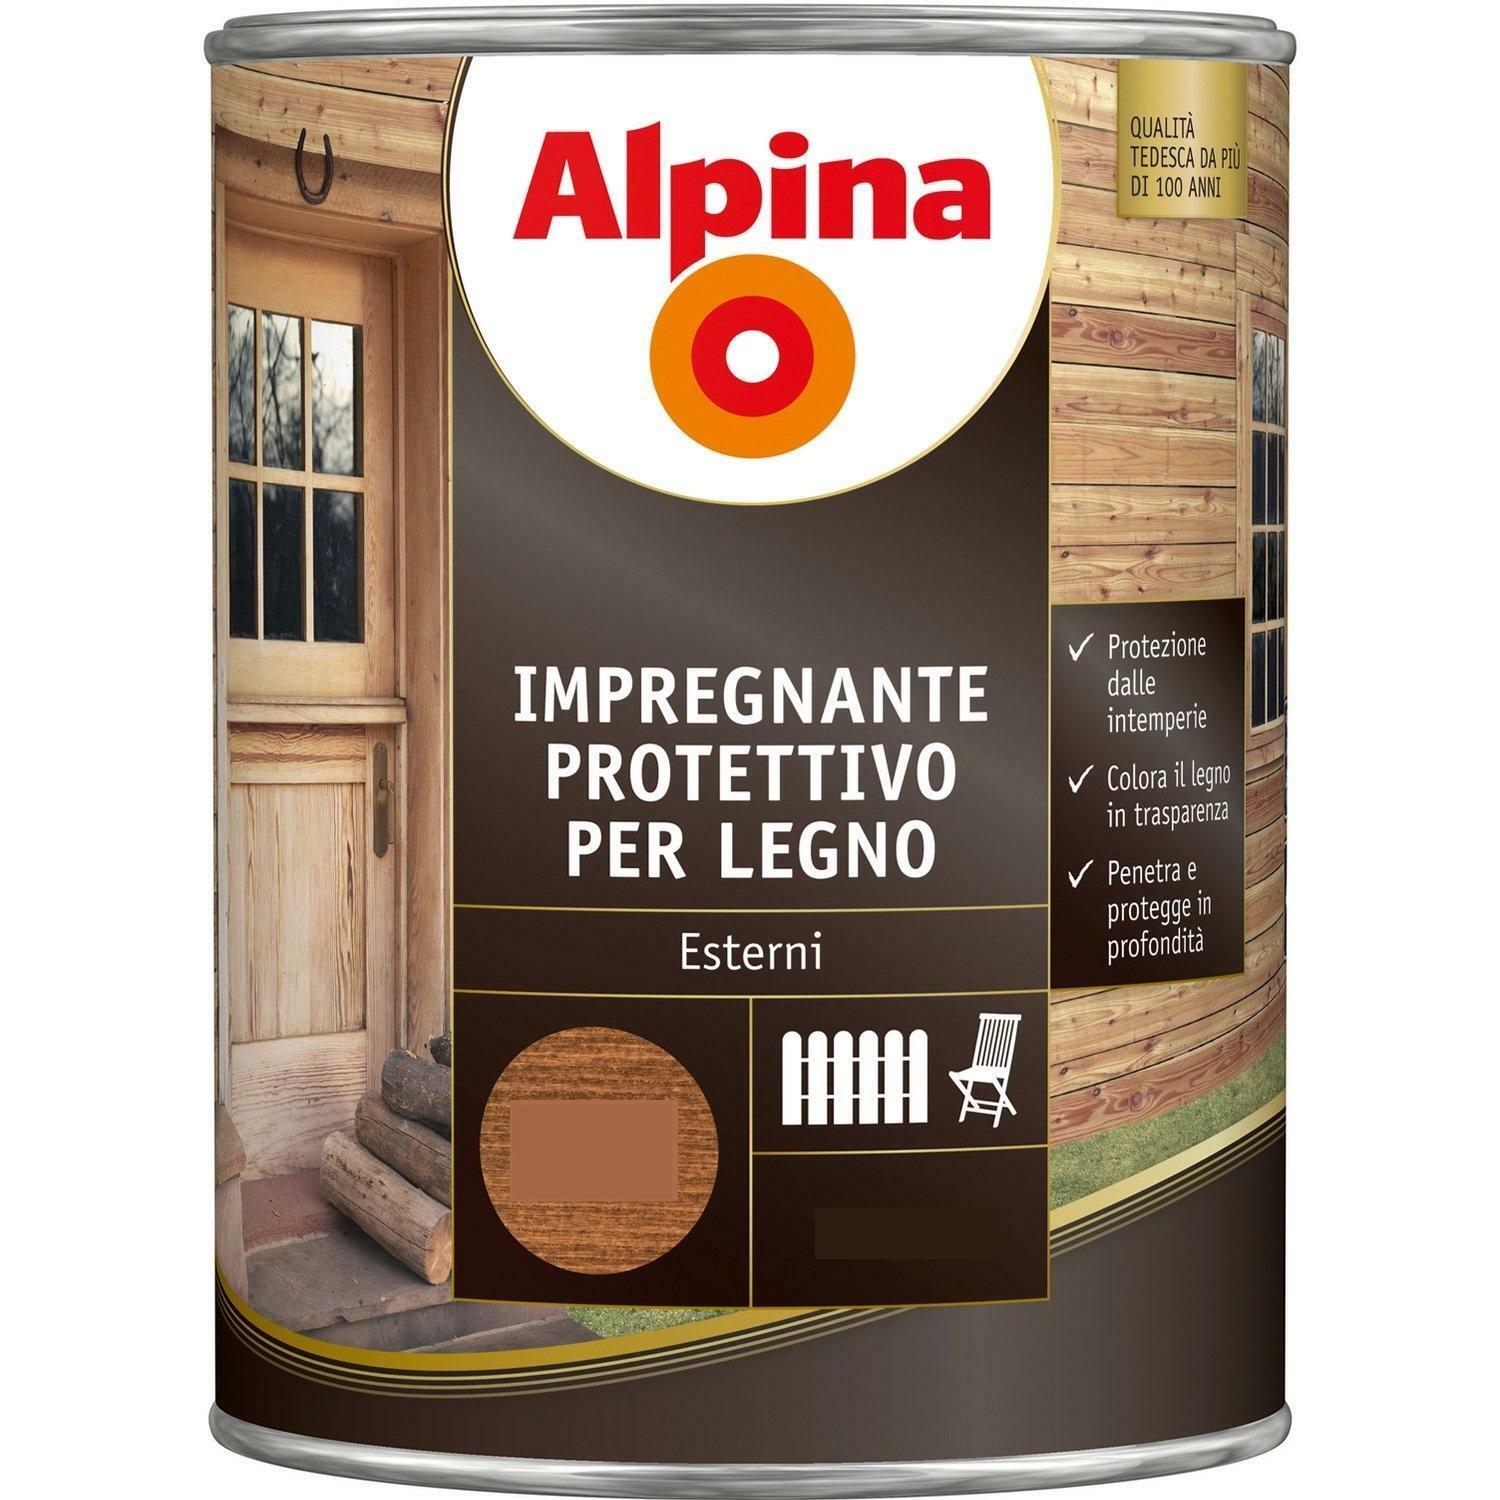 alpina alpina impregnante protettivo per legno colore noce 2,5 litri